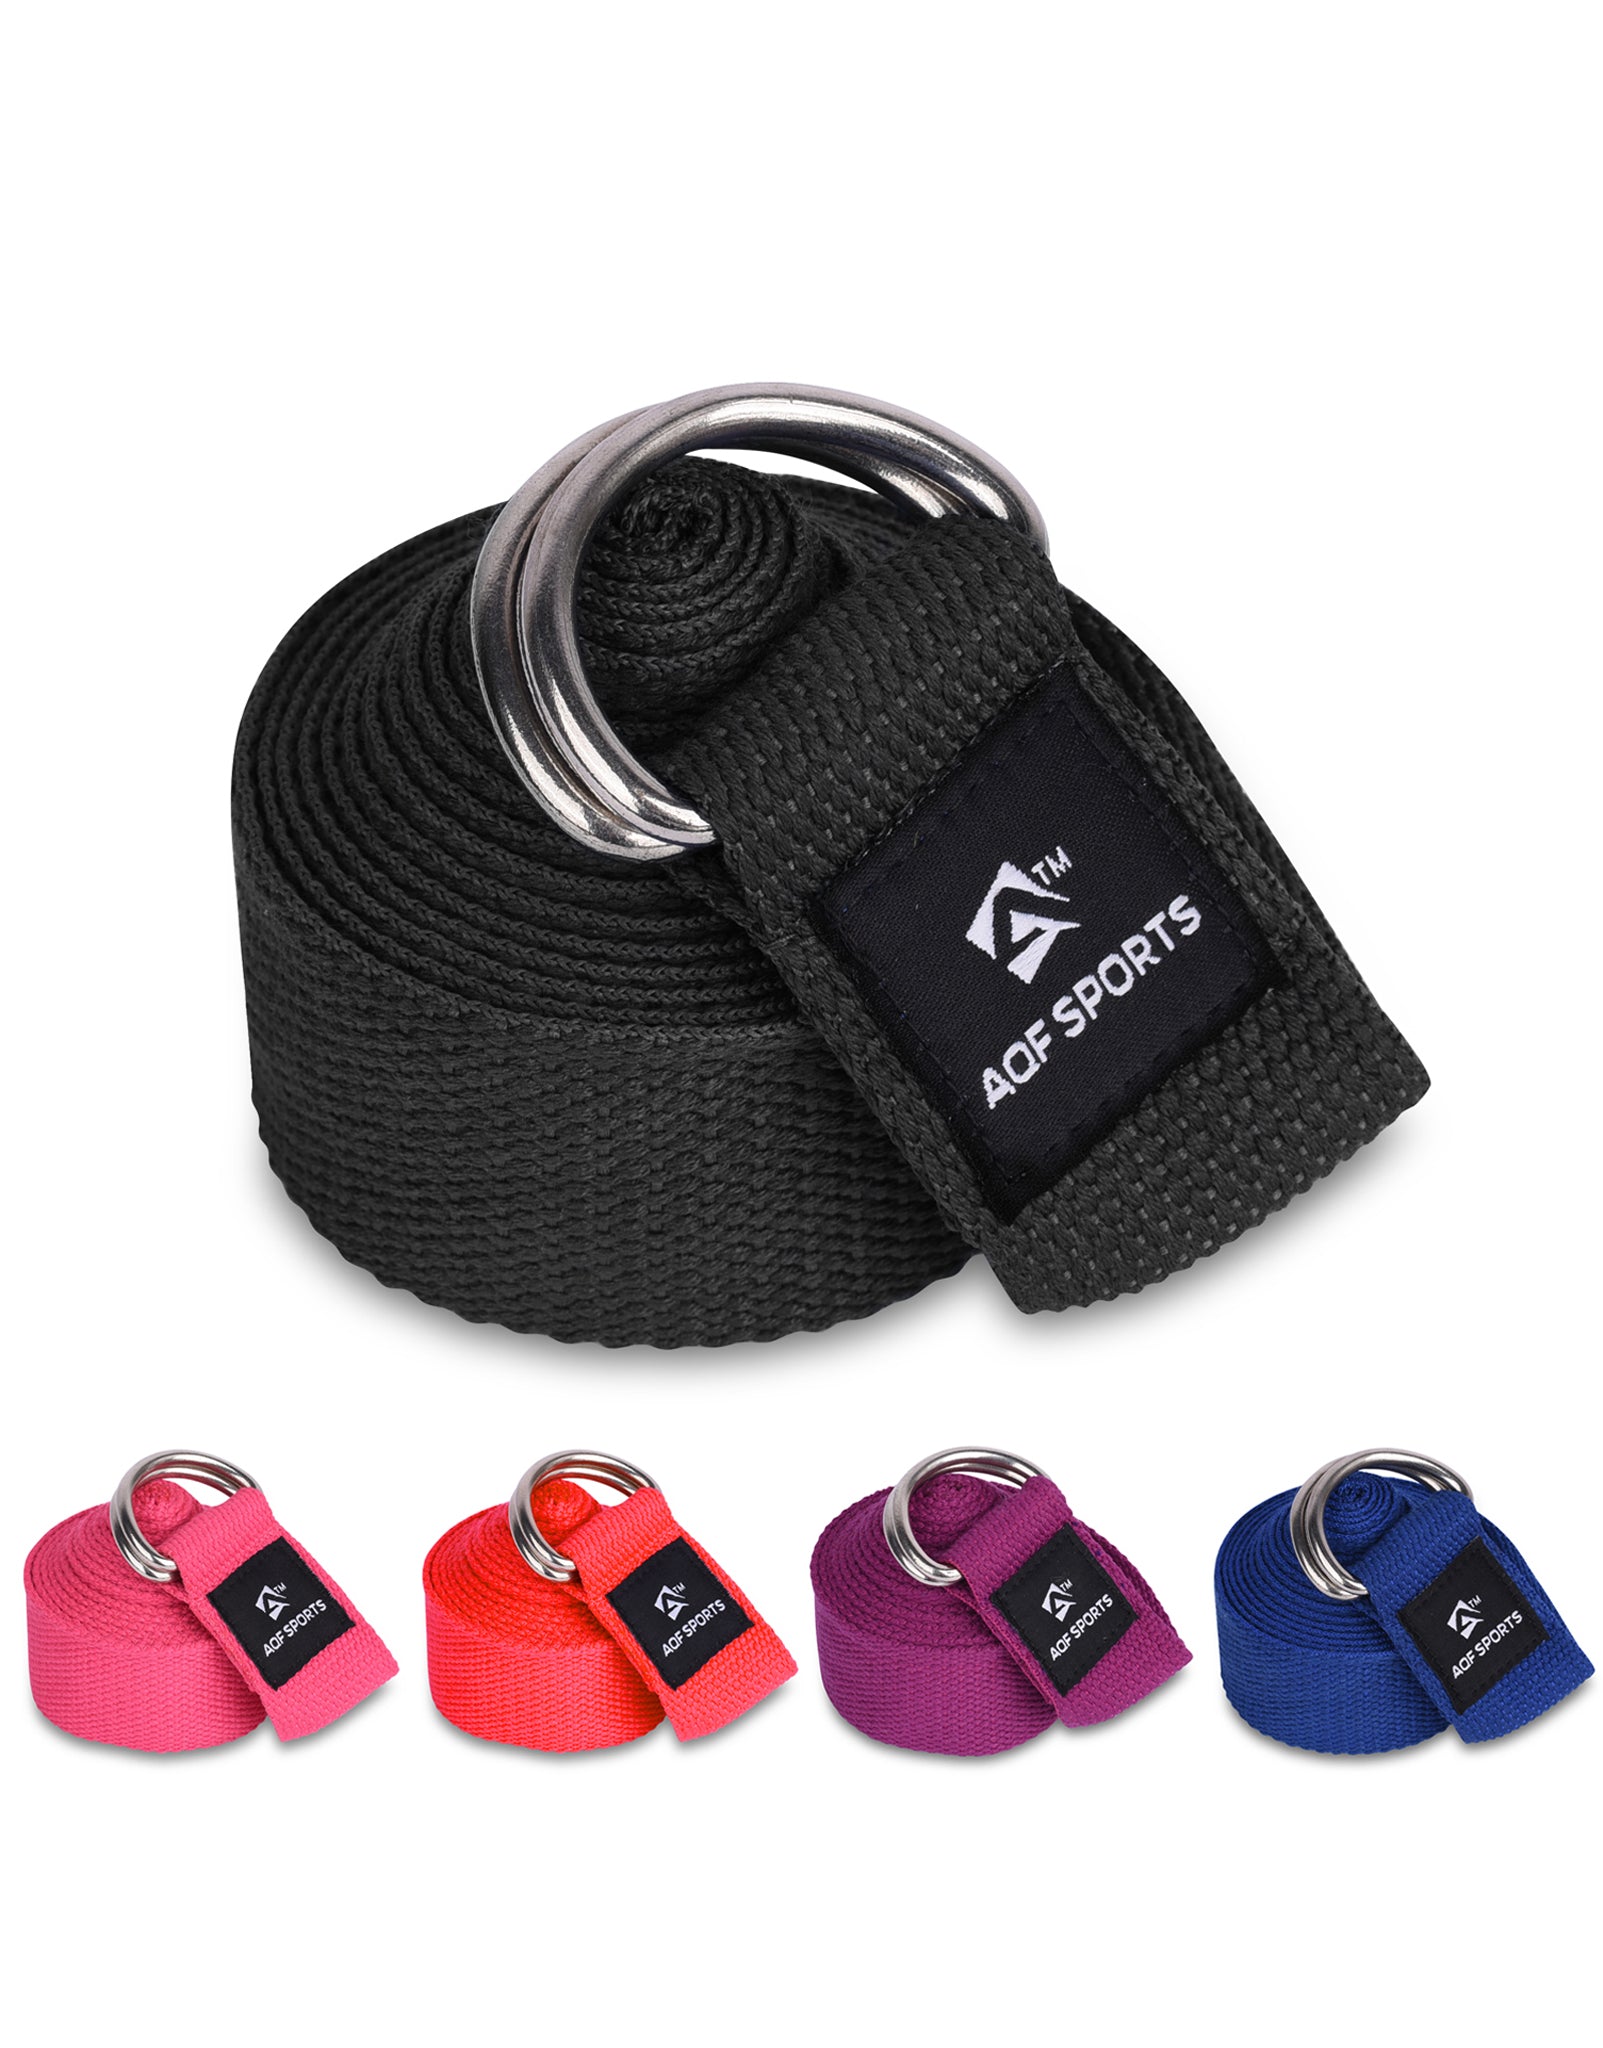 AQF Yoga Strap Belt - AQF Sports